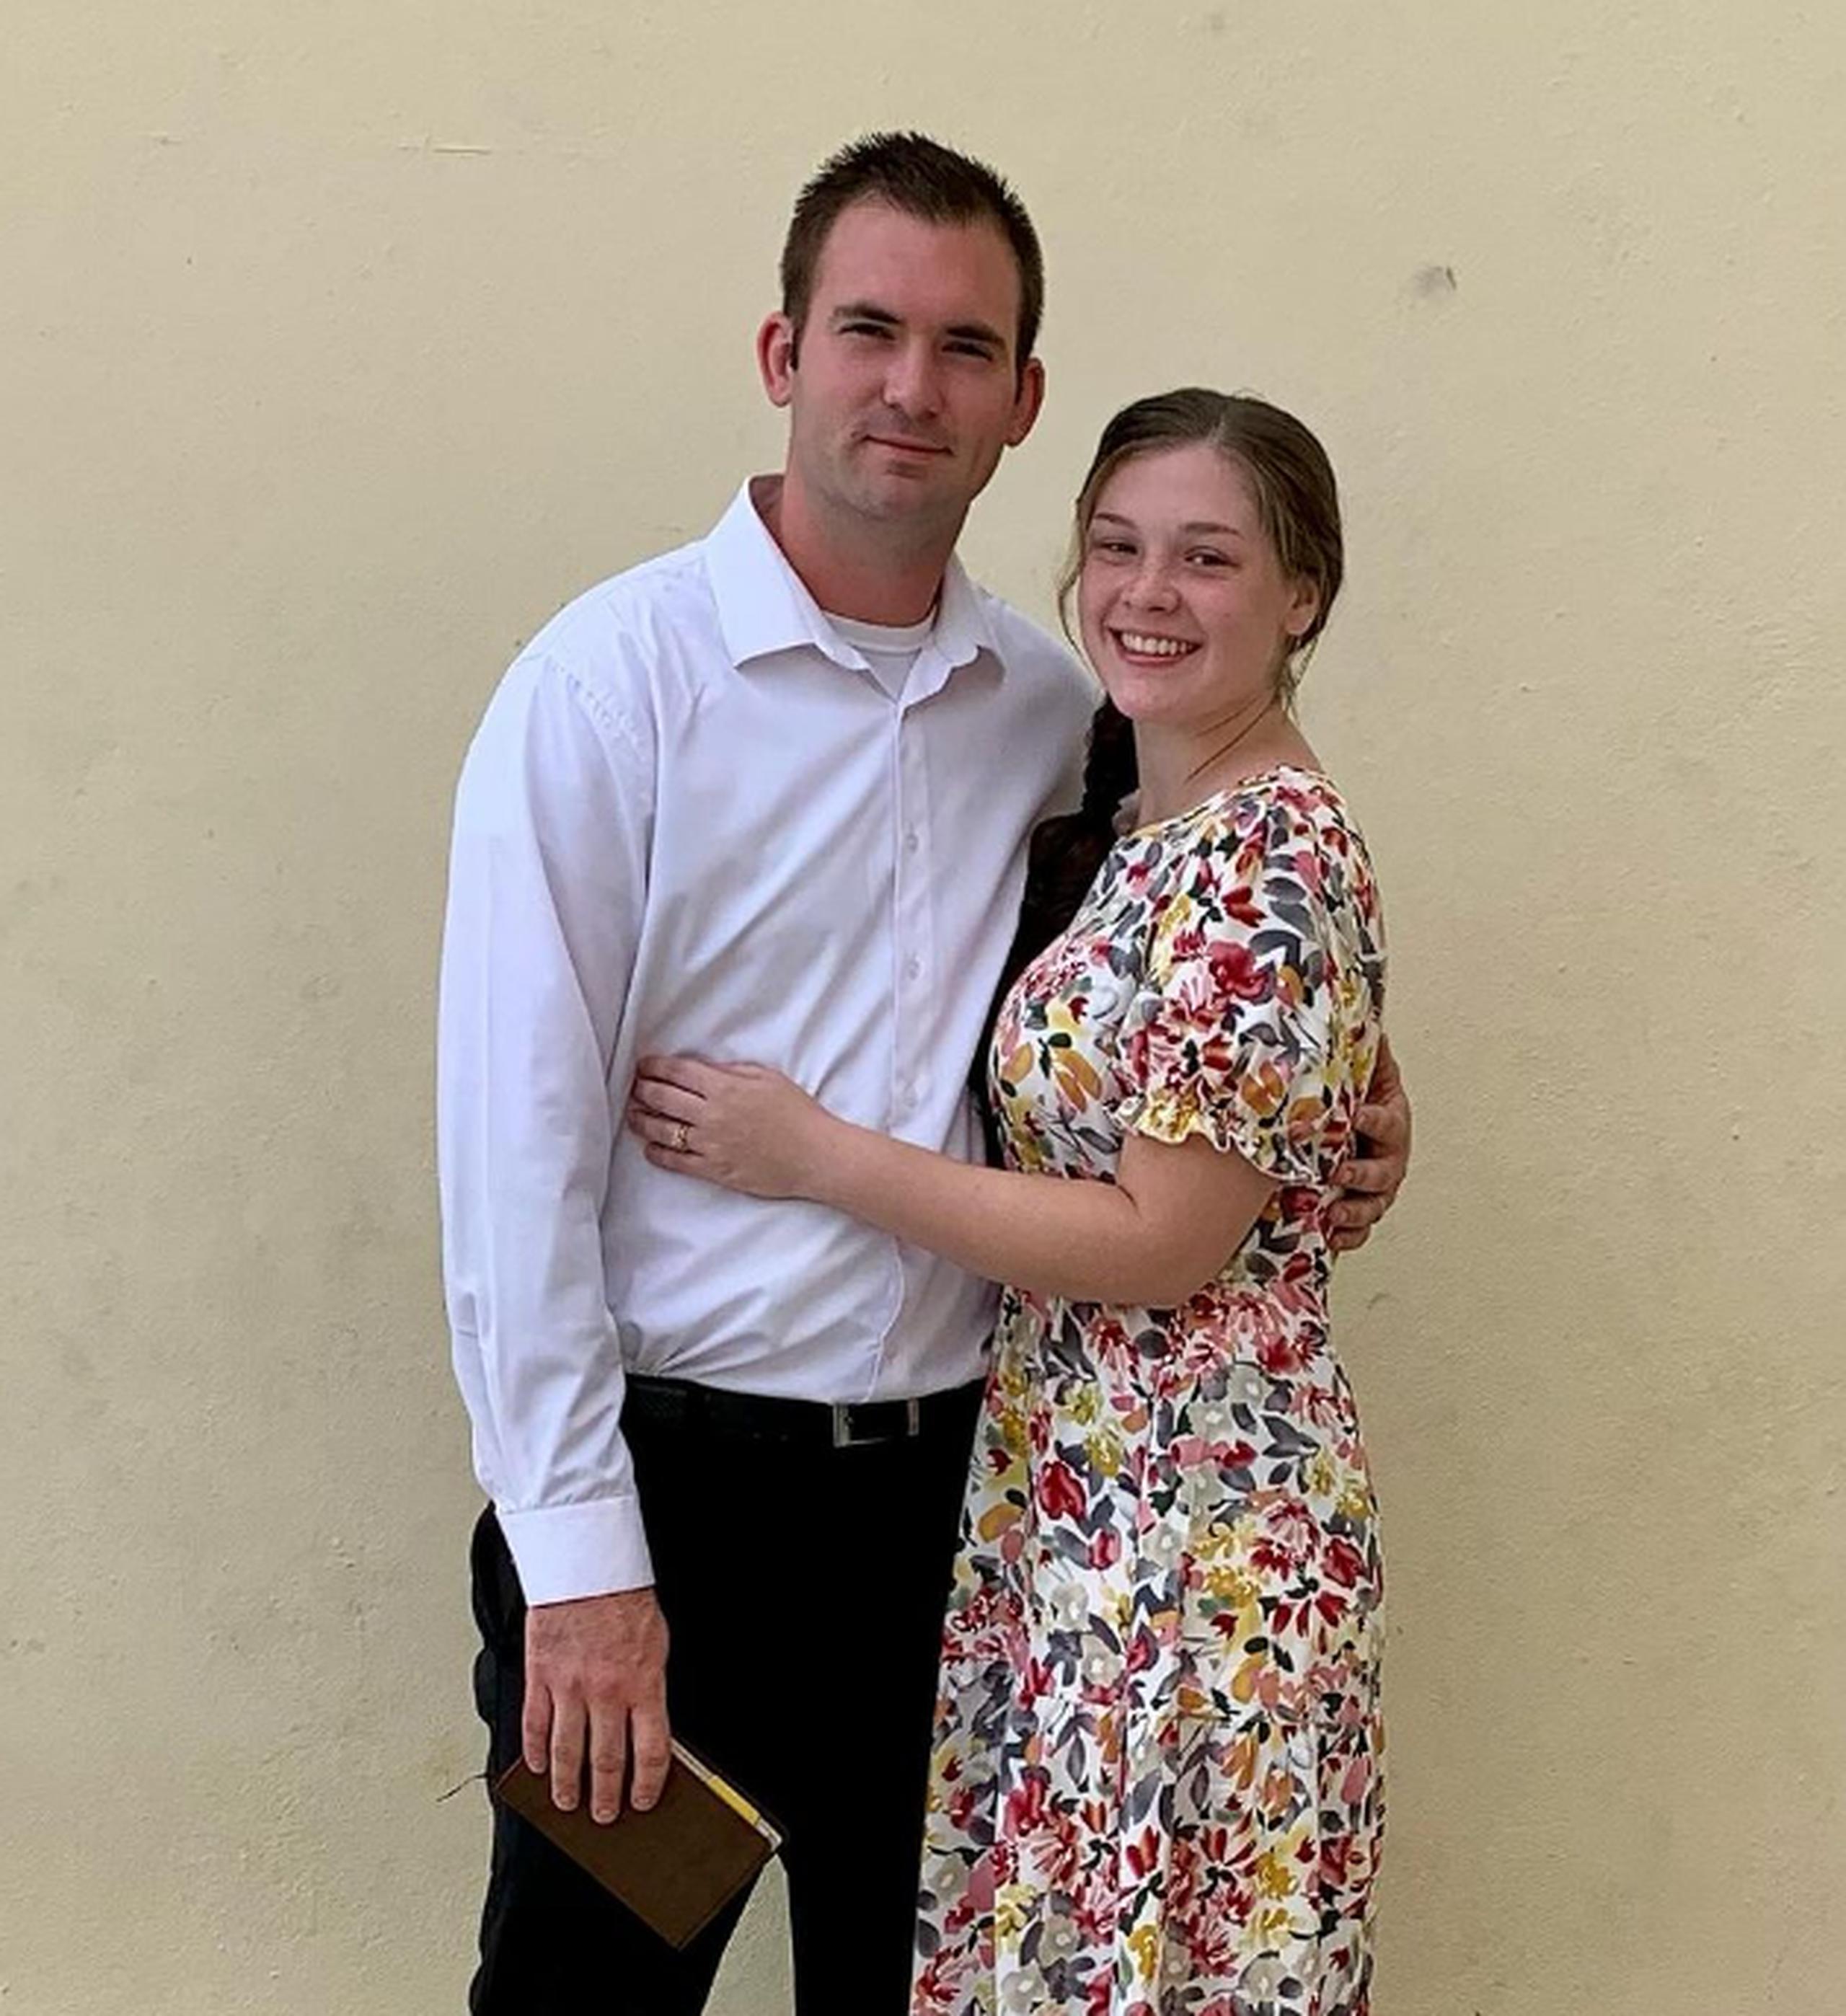 Natalie y Davy se casaron en agosto de 2022 y se mudaron a Haití tres meses después, según la cuenta de Instagram de la joven.